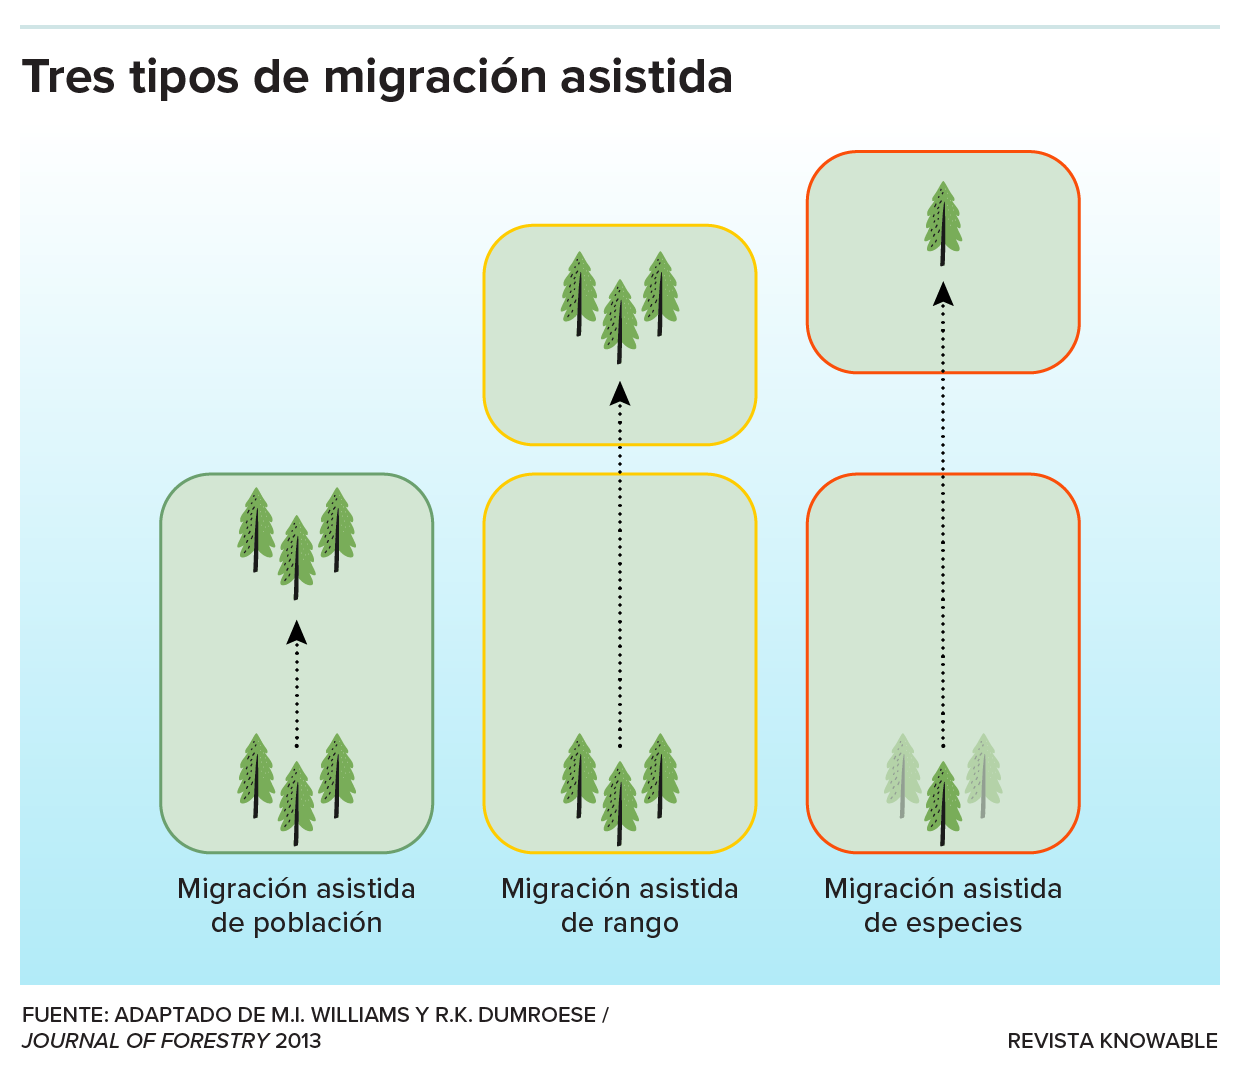 El gráfico muestra lo que ocurre en los tres tipos de migración asistida.